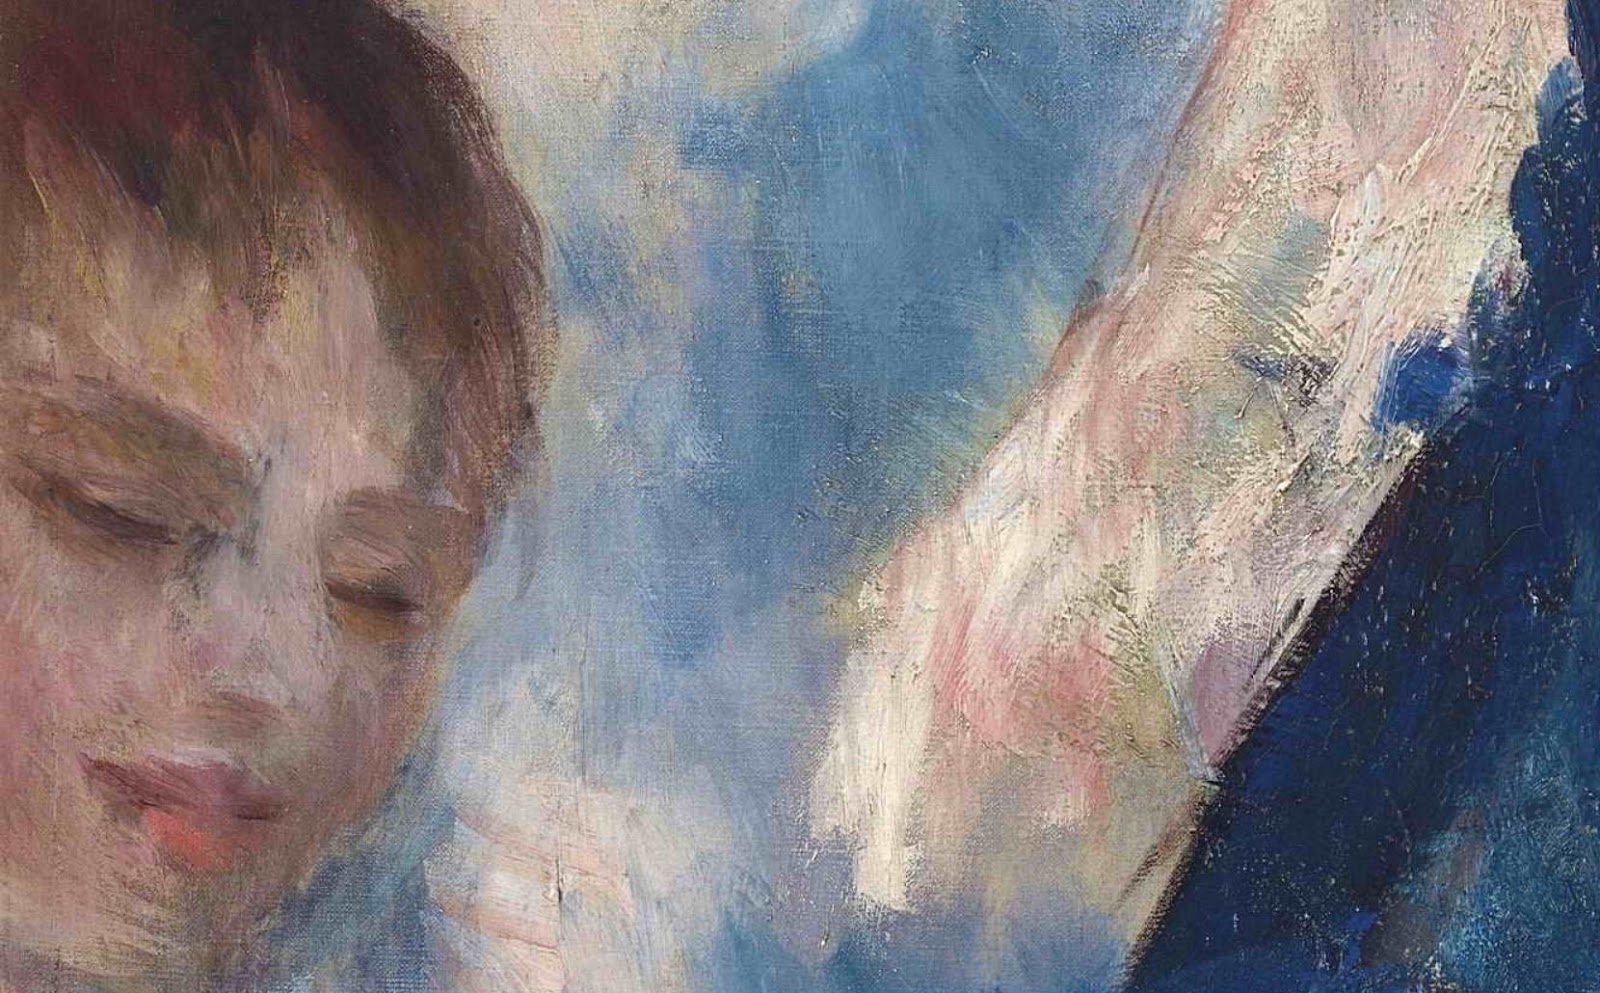 Pierre+Auguste+Renoir-1841-1-19 (442).JPG